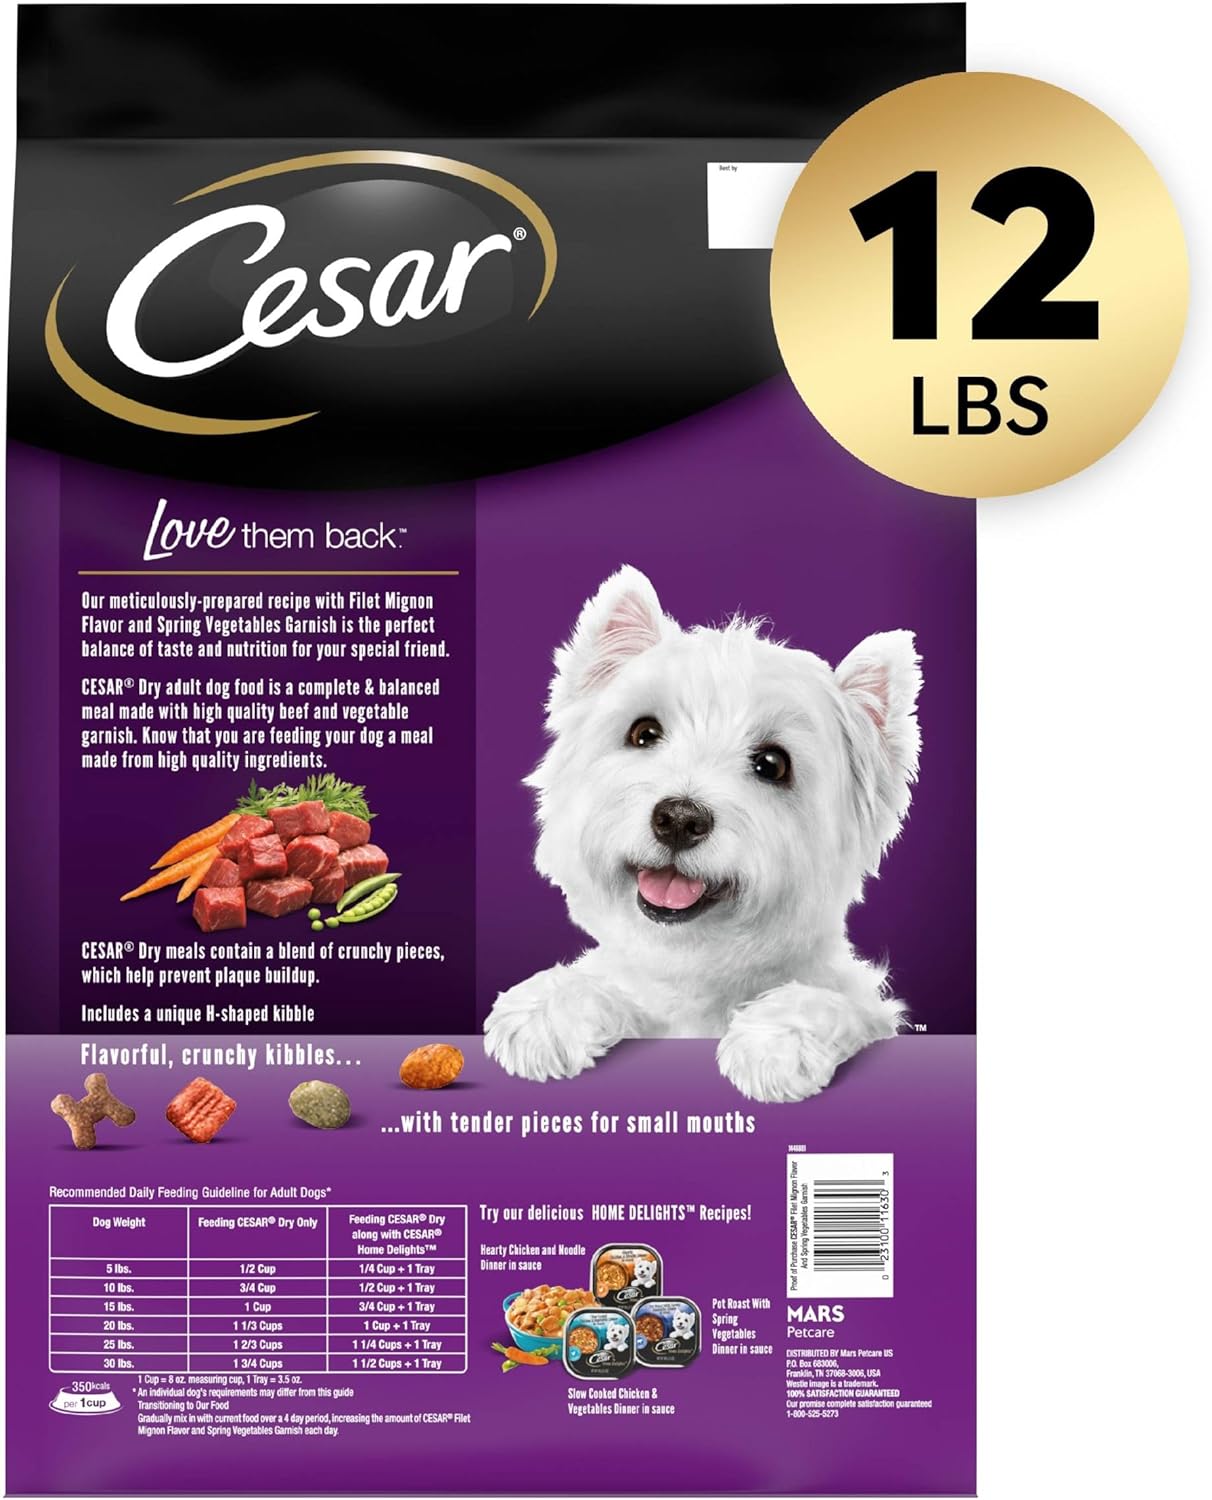 Cesar Filet Mignon Flavor & Spring Vegetables Garnish Dry Dog Food – Gallery Image 2